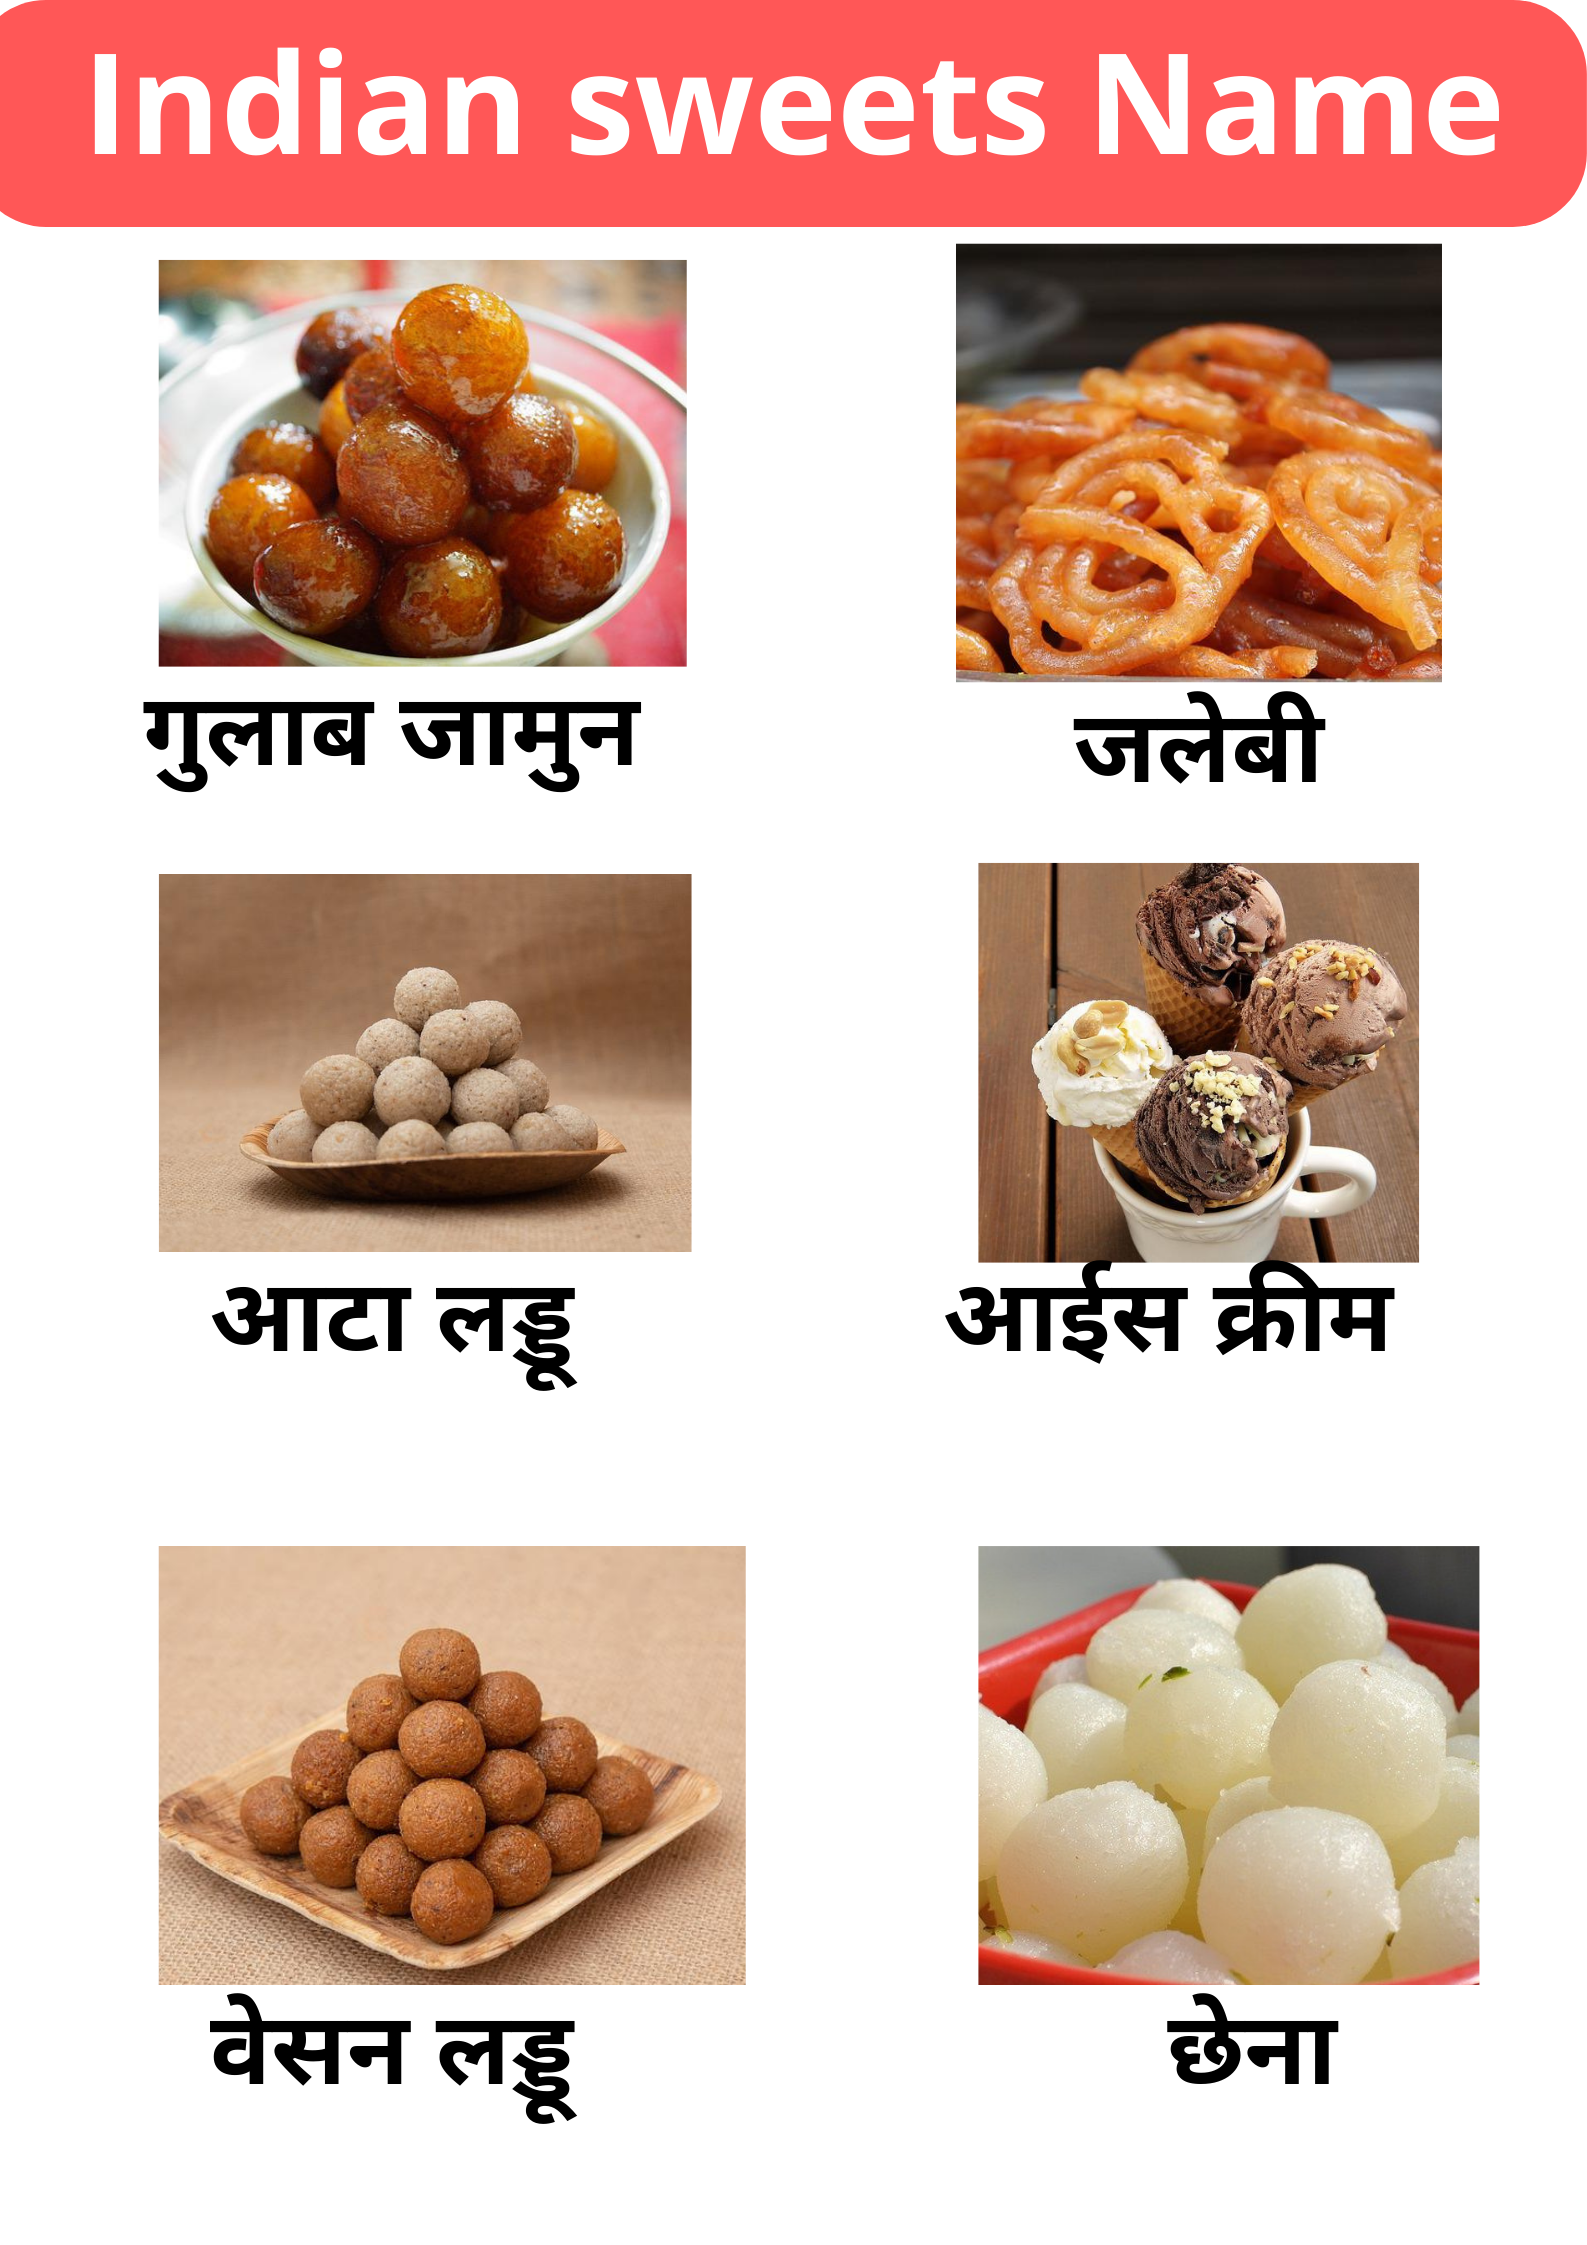 Sweets name of India : भारतीय मिठाइयों के नाम